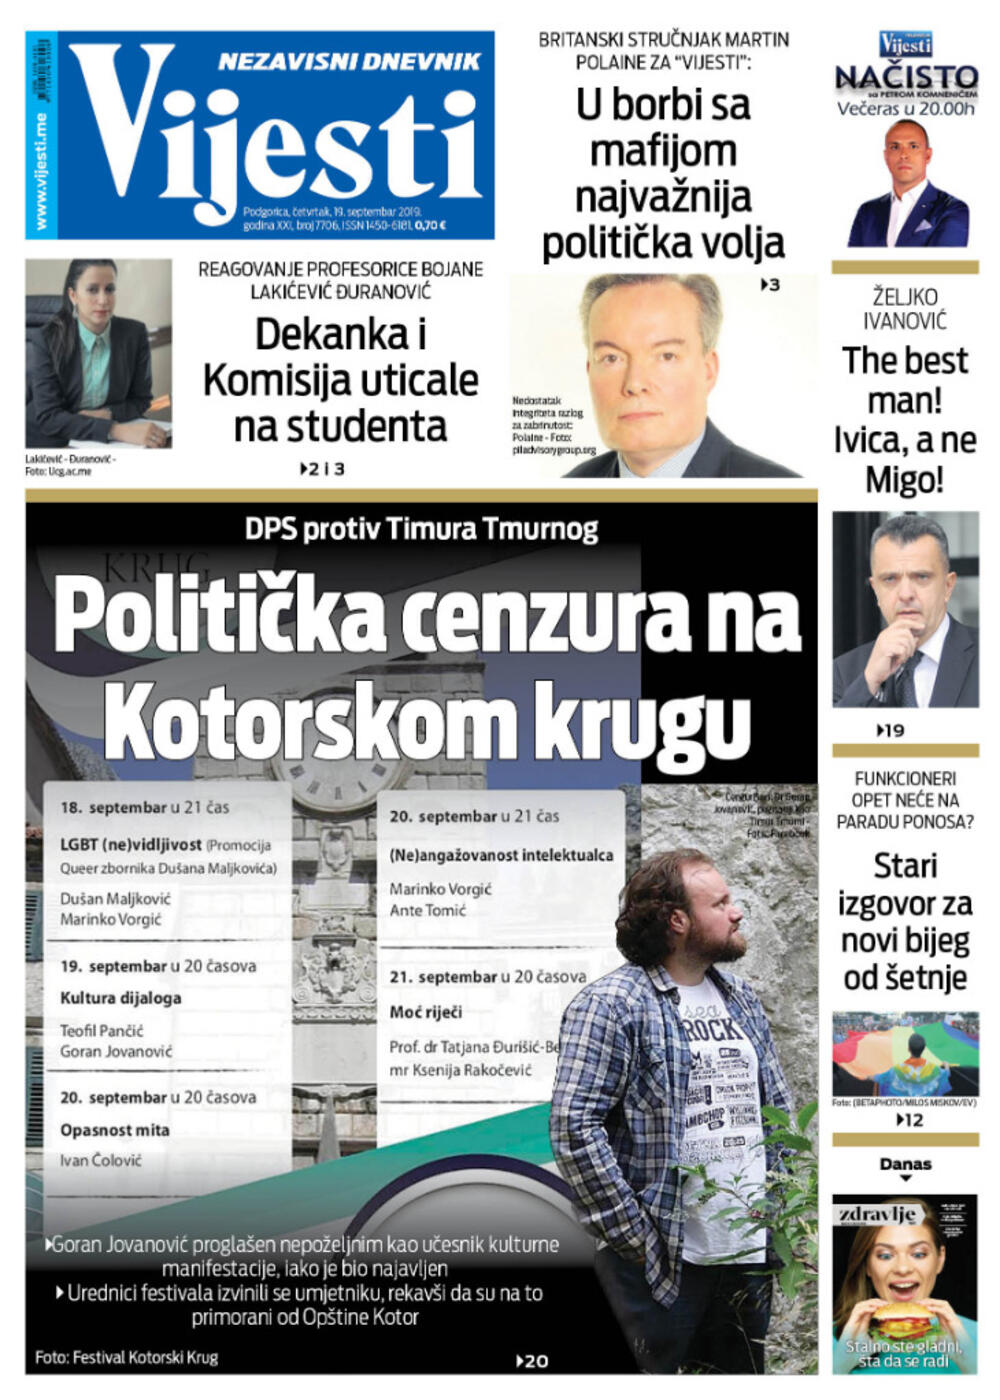 Naslovna strana "Vijesti" za 19. septembar